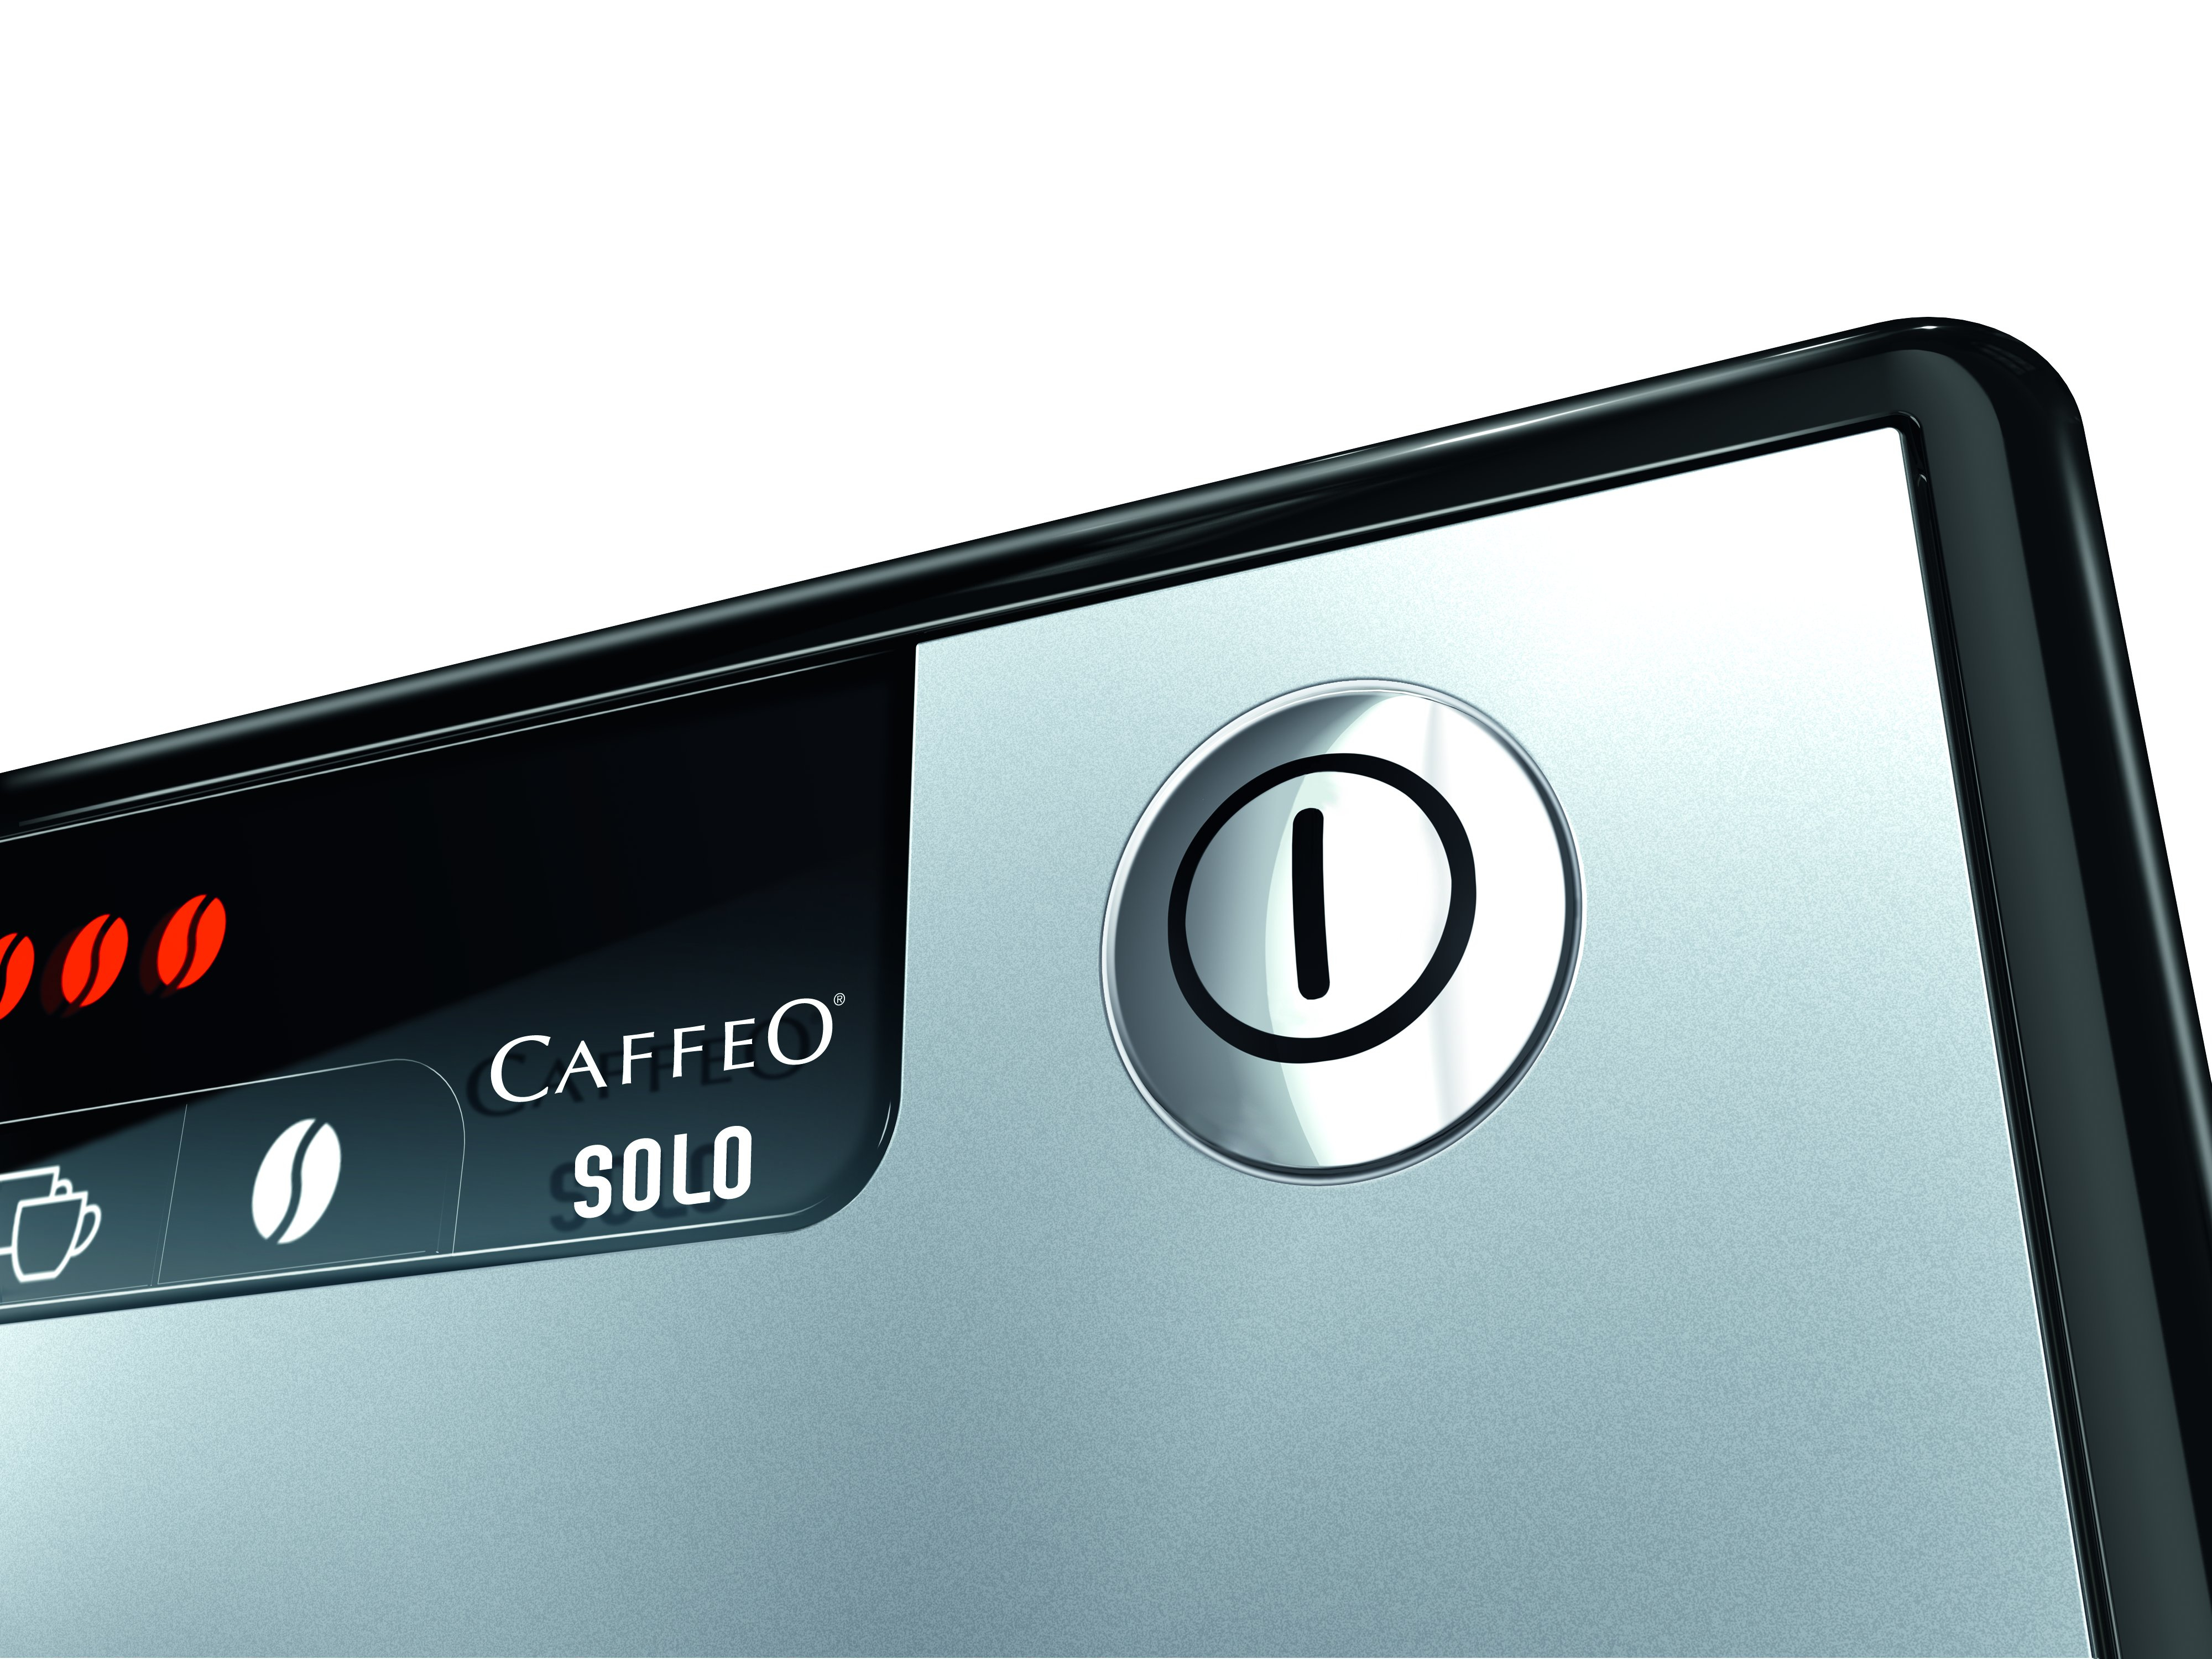 Melitta CAFFEO SOLO SILVER BLACK Volautomatische espressomachine E950-103 zilver